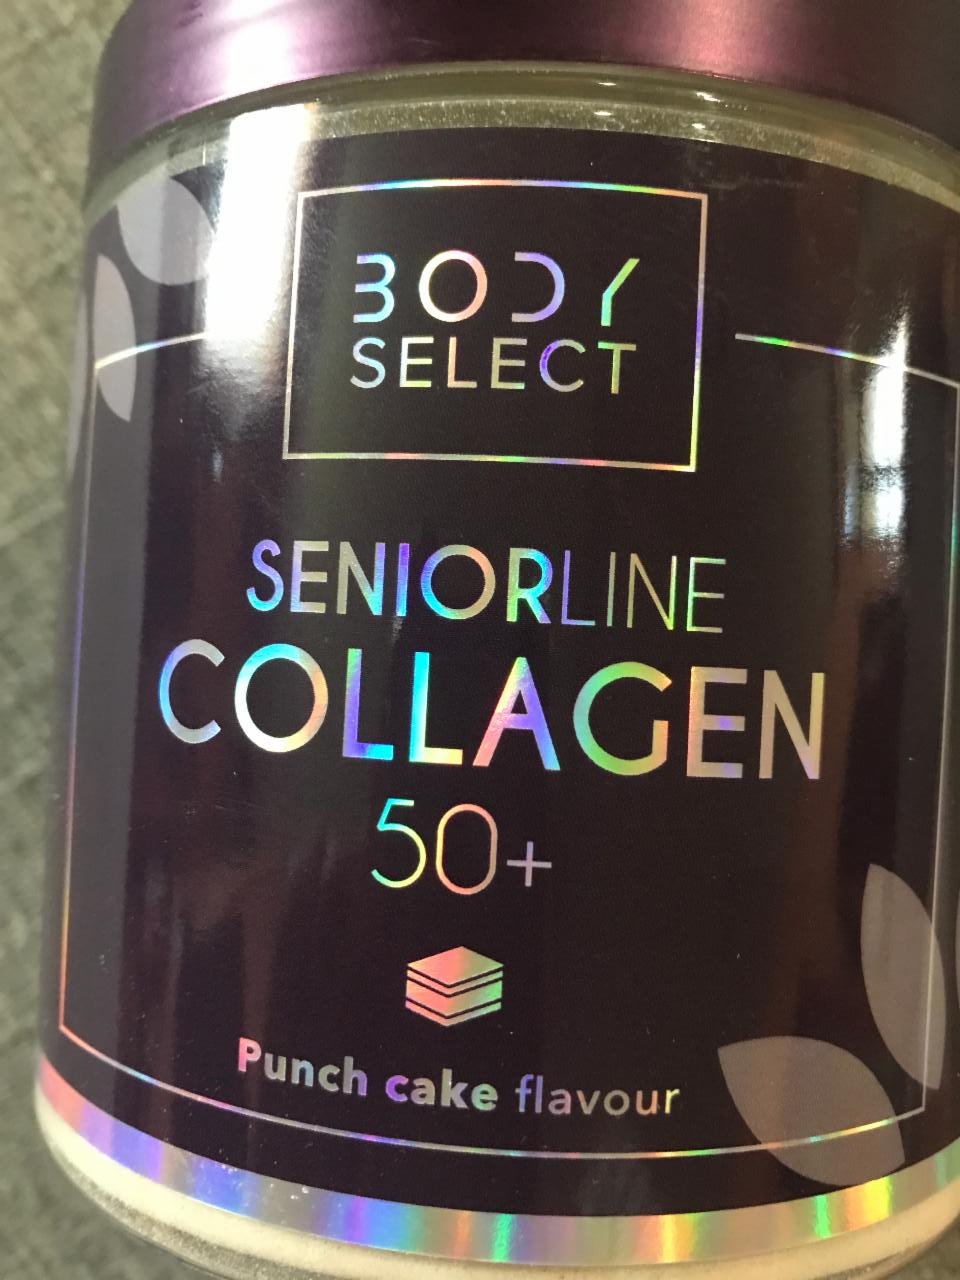 Képek - Seniorline collagen puncs ízű Body Select